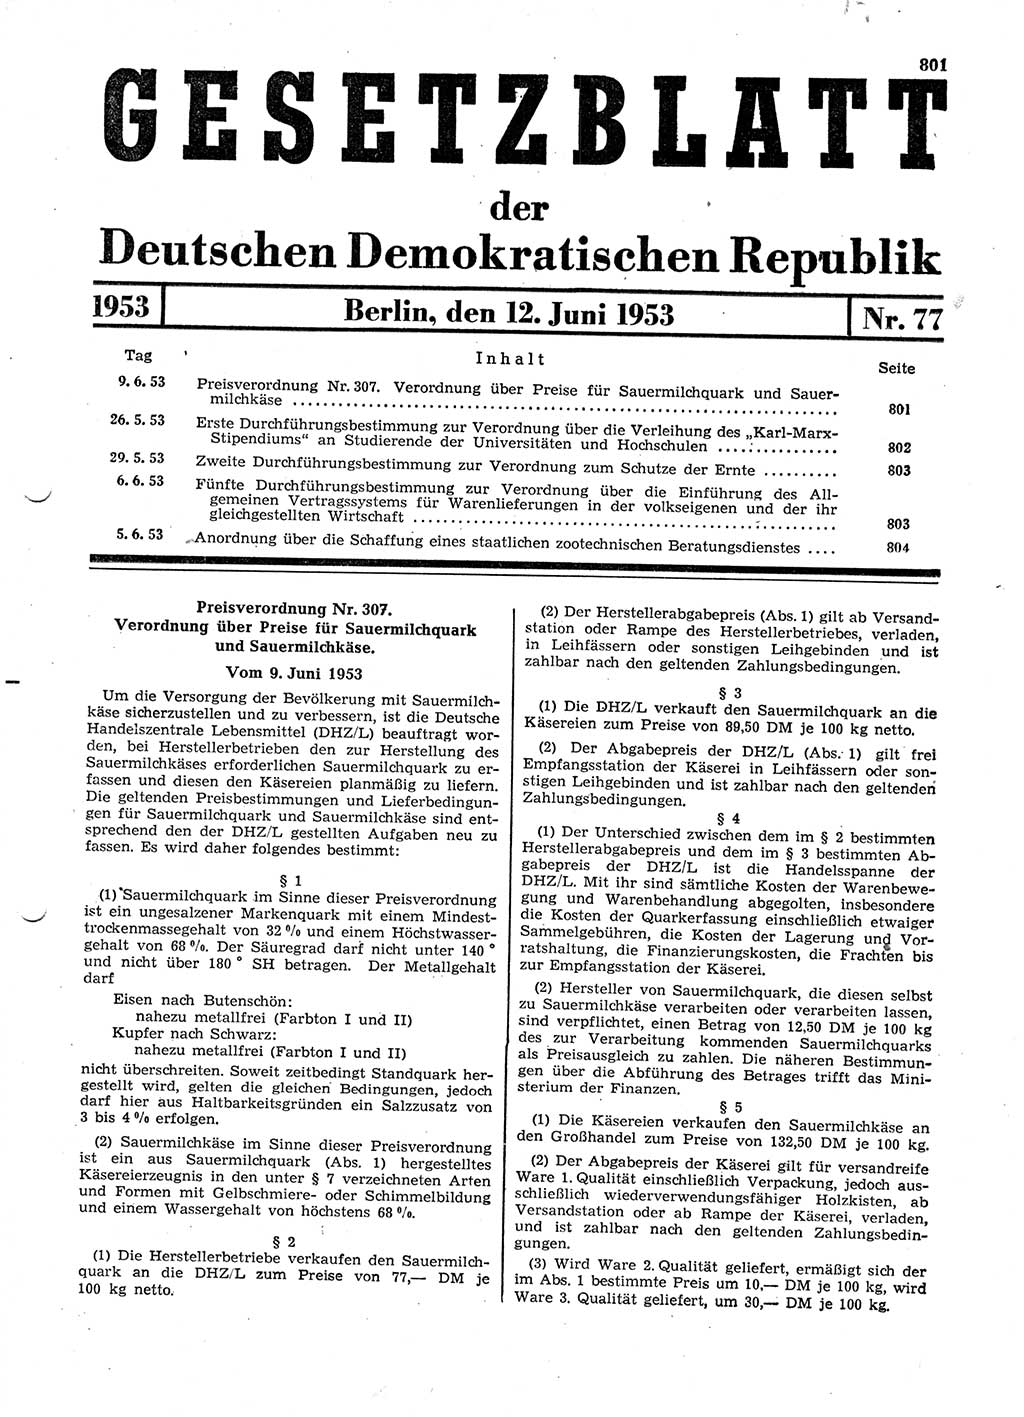 Gesetzblatt (GBl.) der Deutschen Demokratischen Republik (DDR) 1953, Seite 801 (GBl. DDR 1953, S. 801)